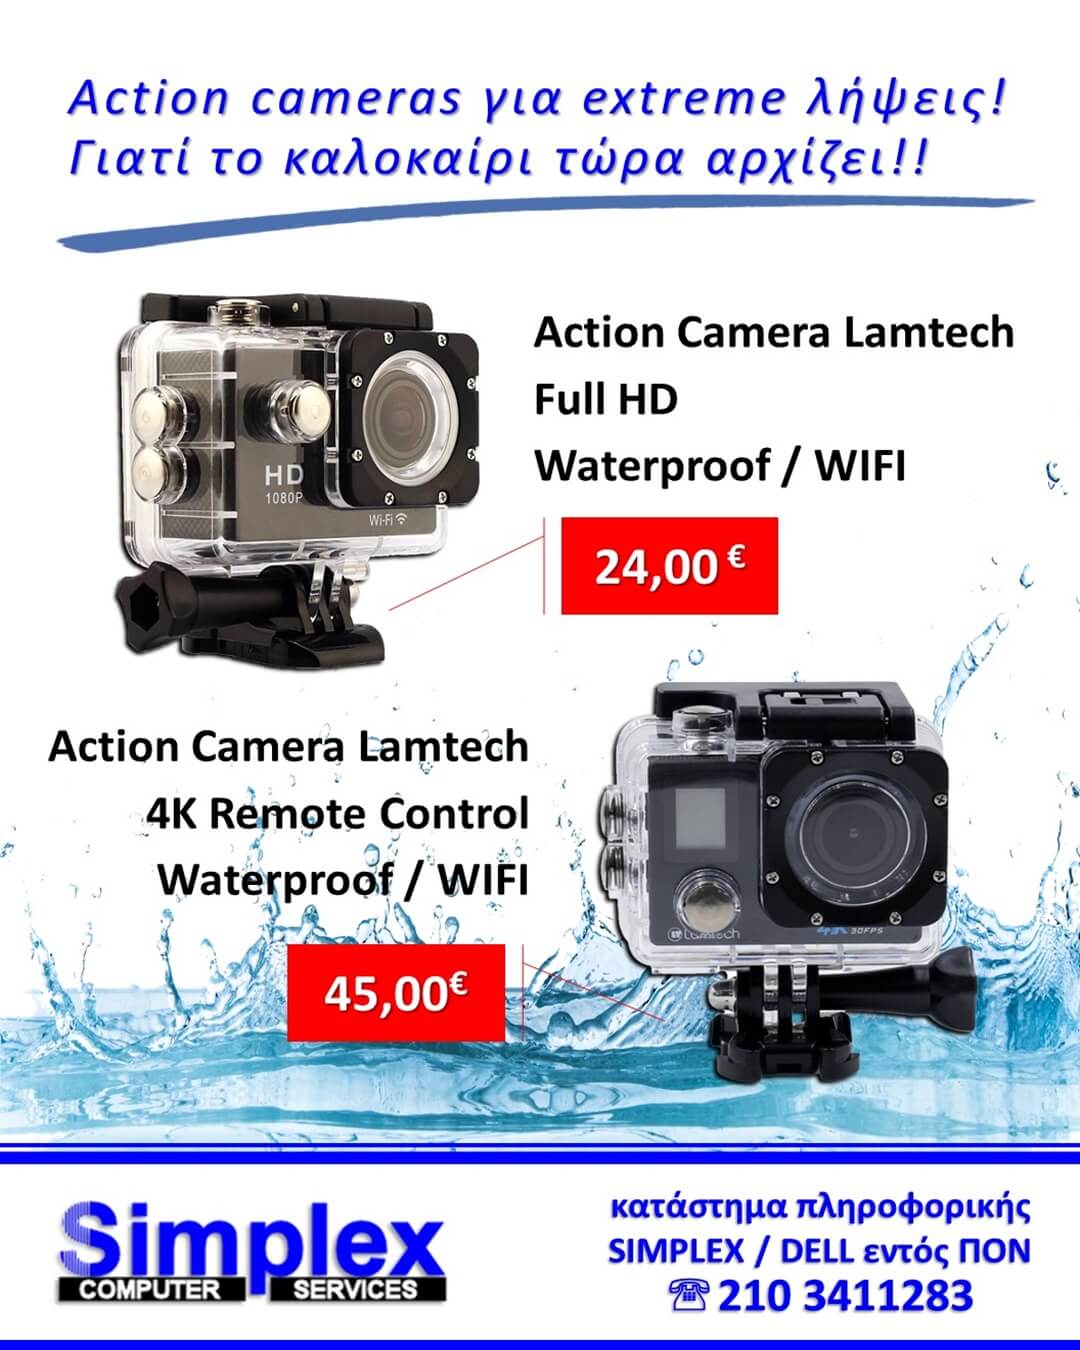 SIMPLEX – Action Cameras